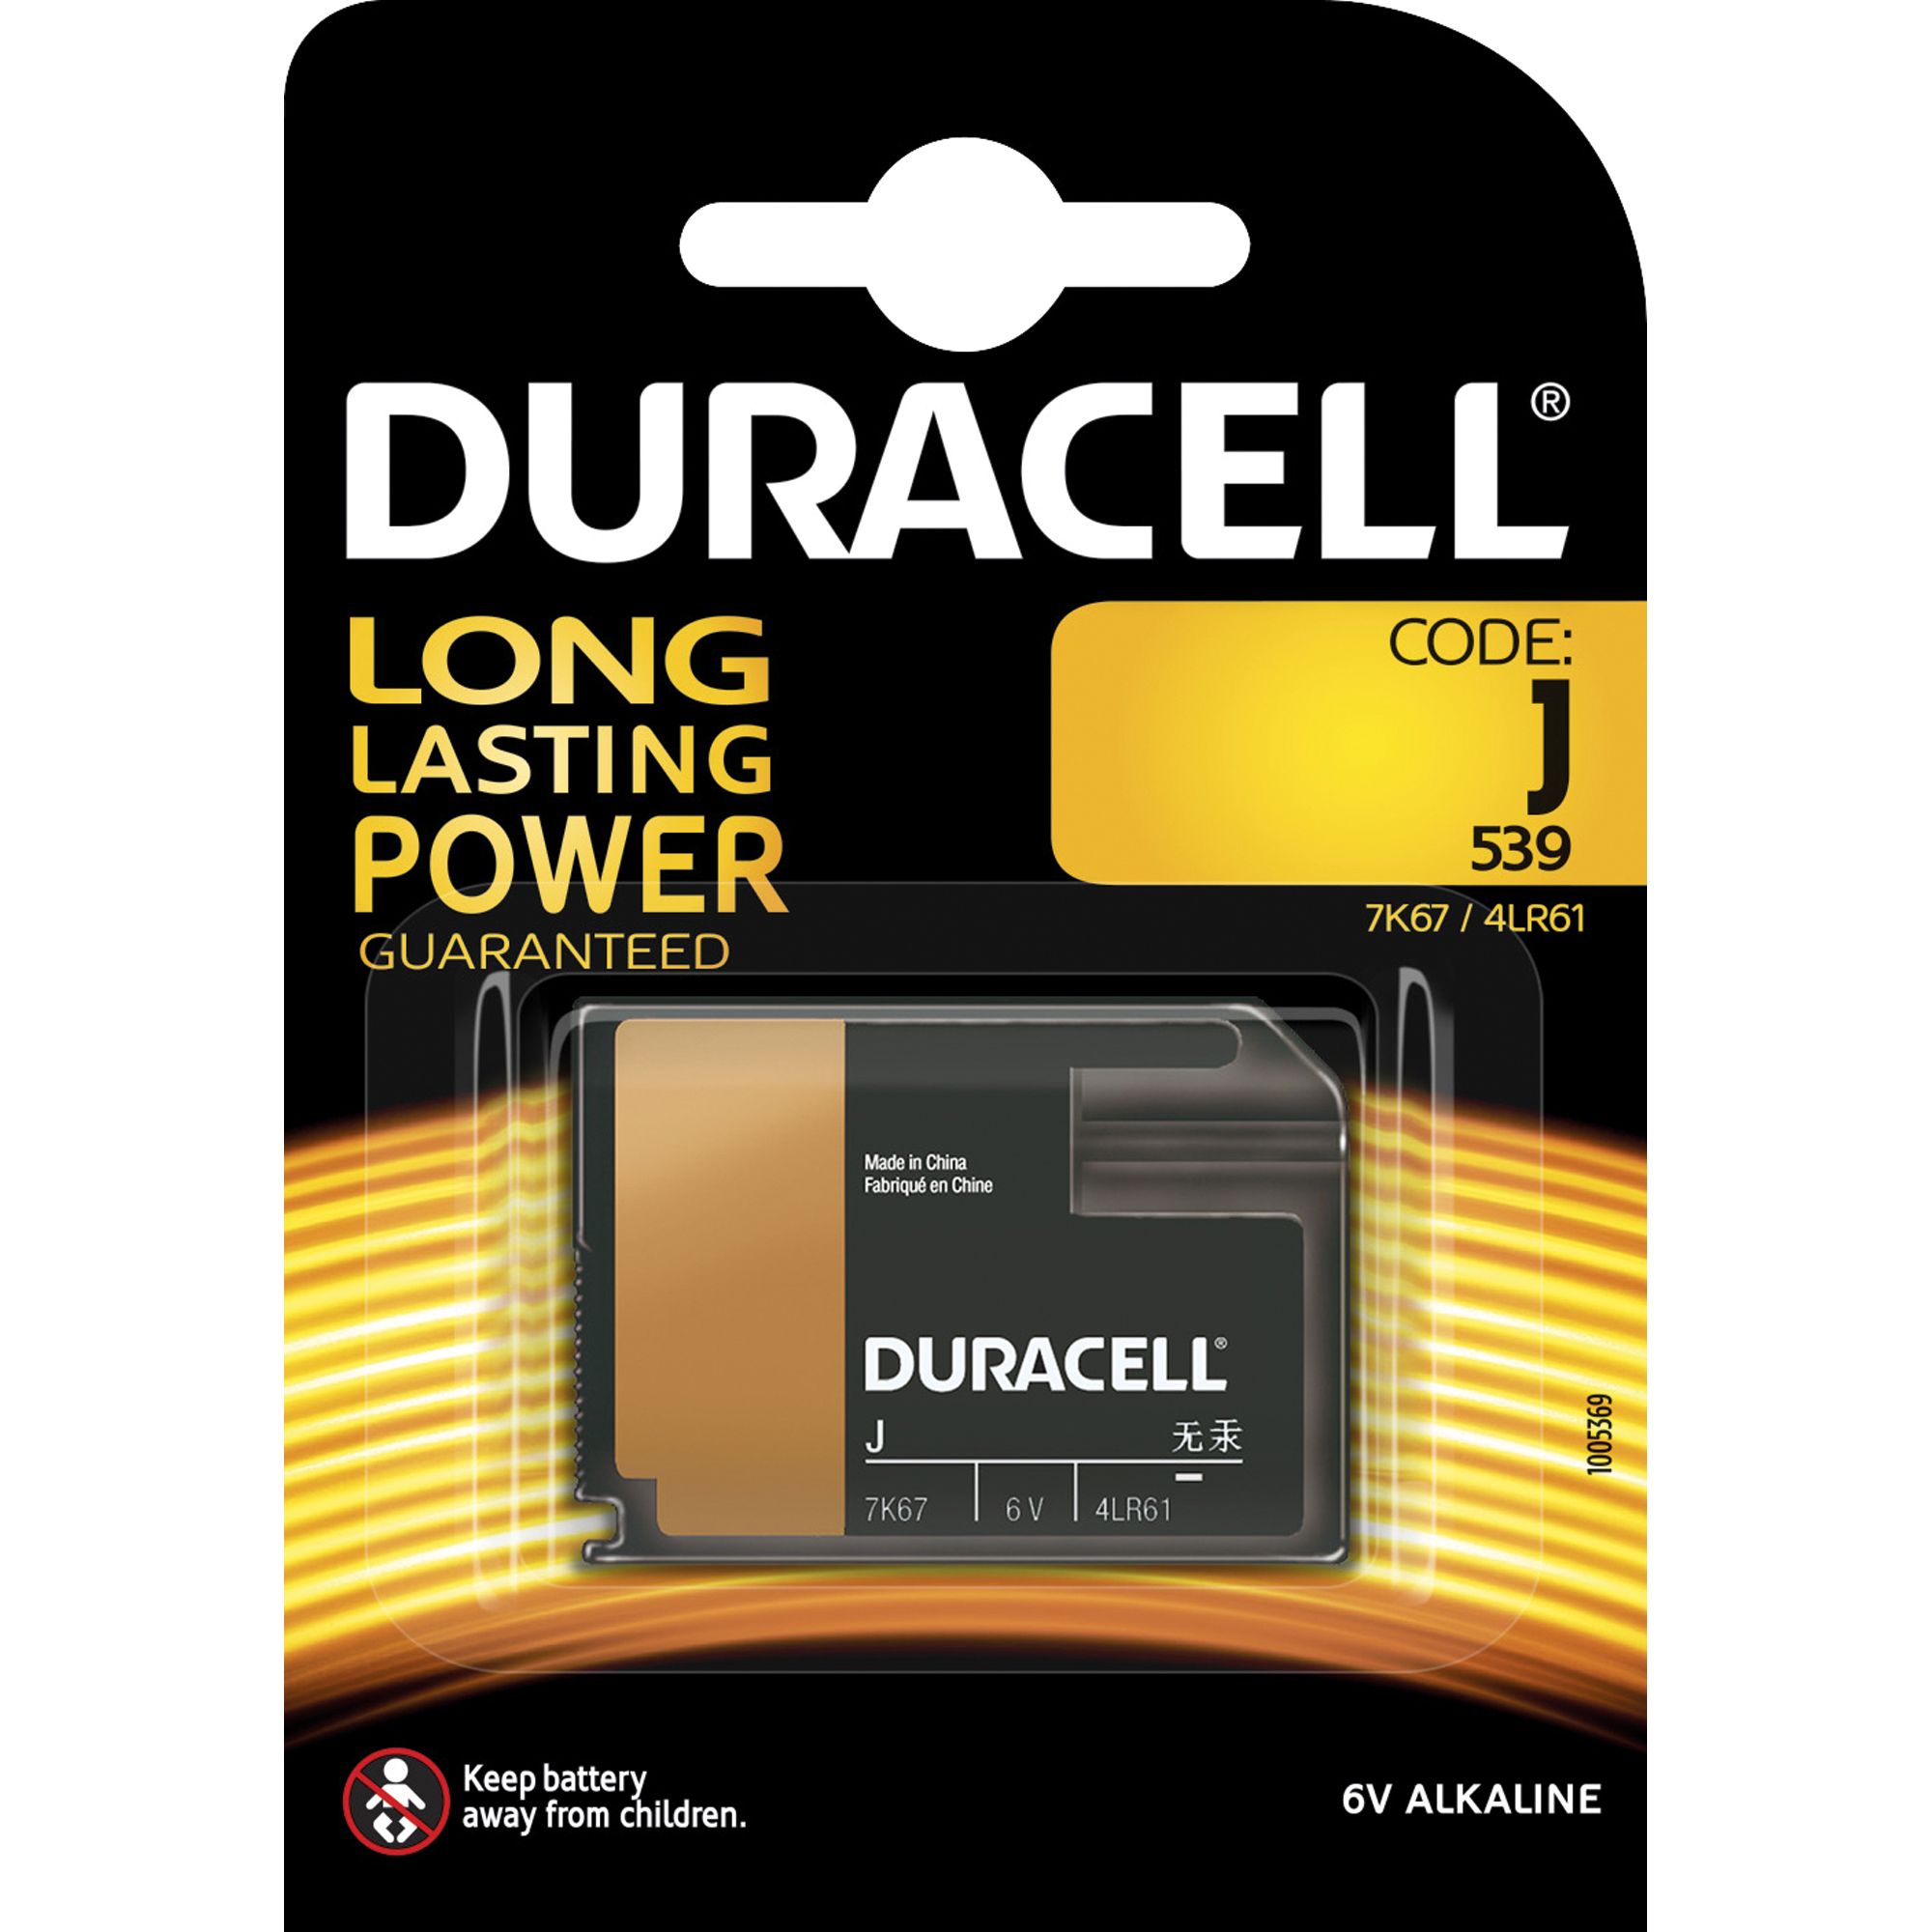 DURACELL Batterie Alkaline Security 767102 J 6V Retail Blister